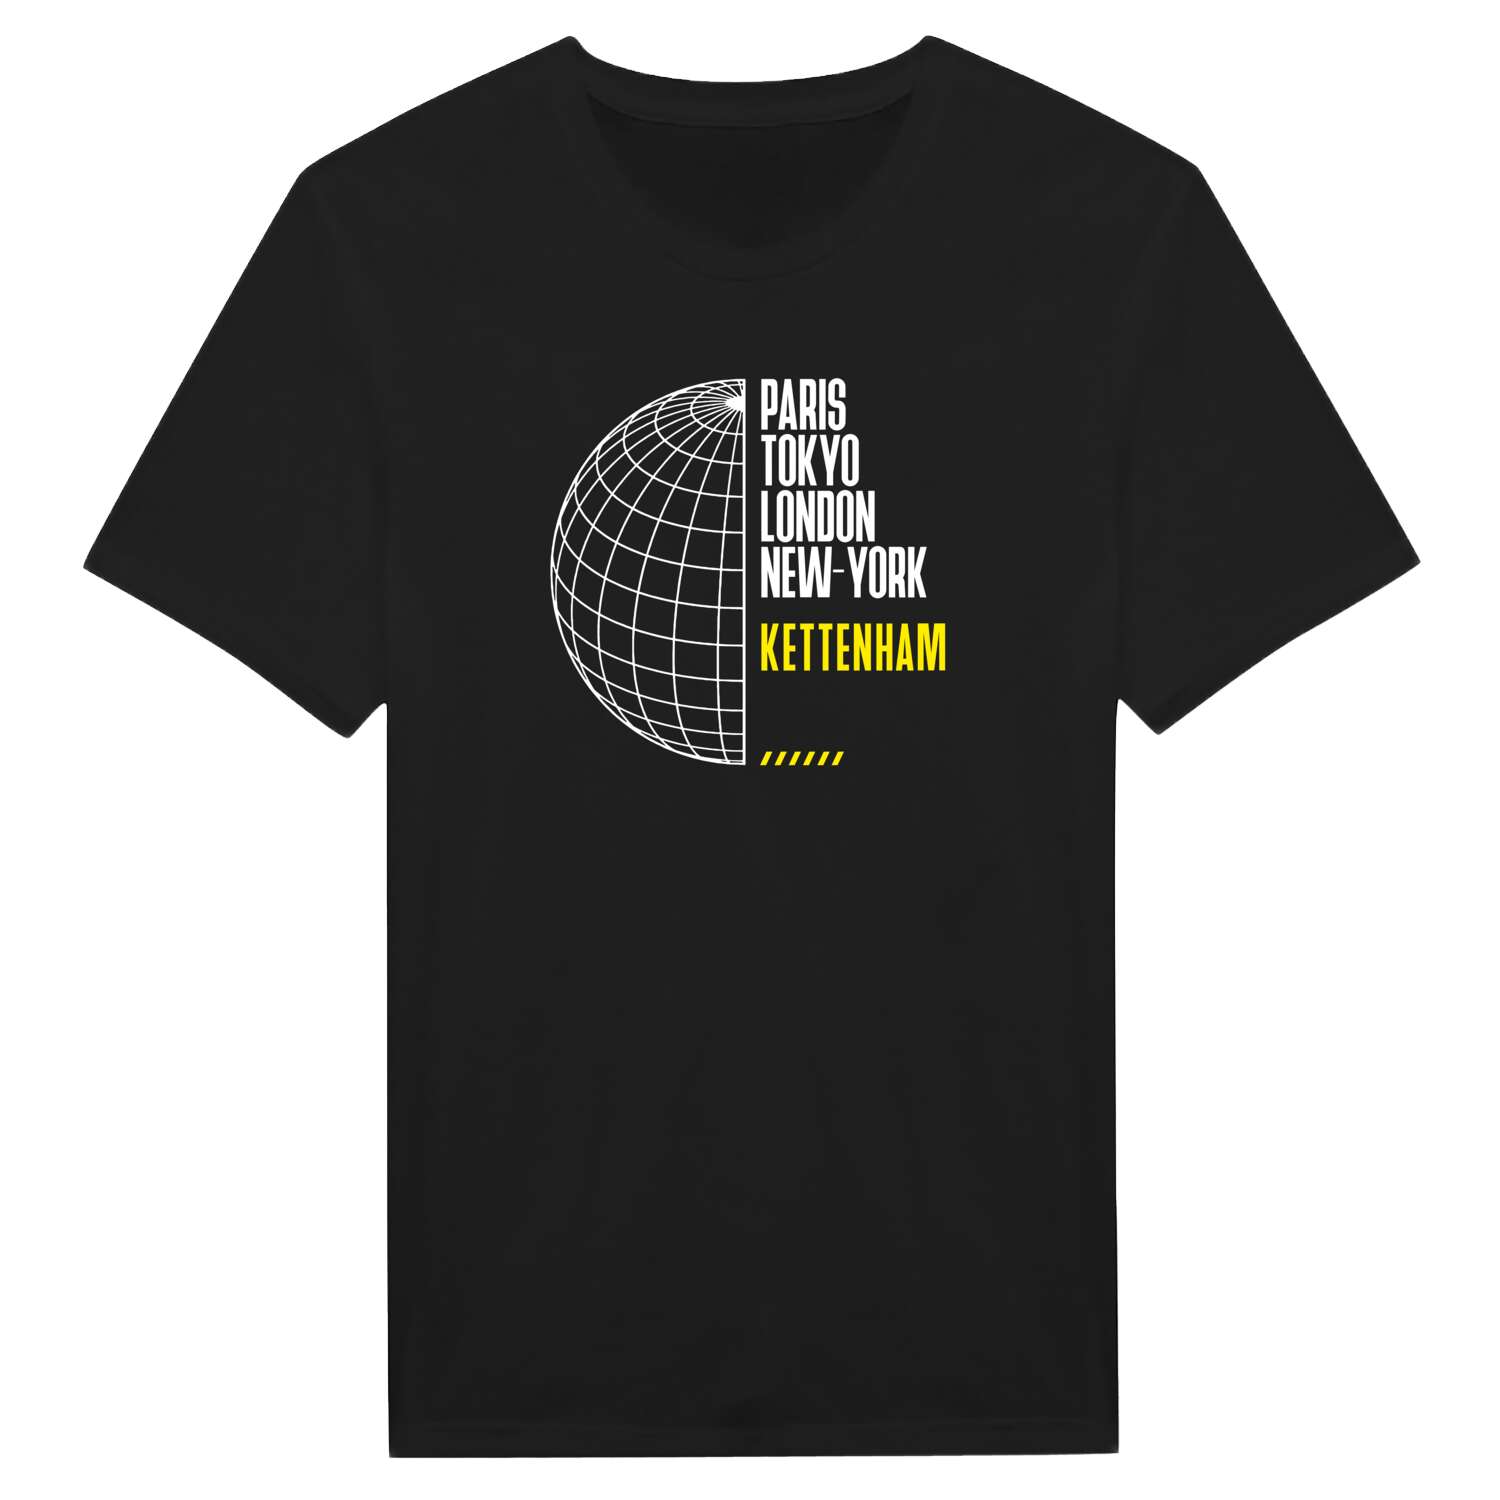 Kettenham T-Shirt »Paris Tokyo London«